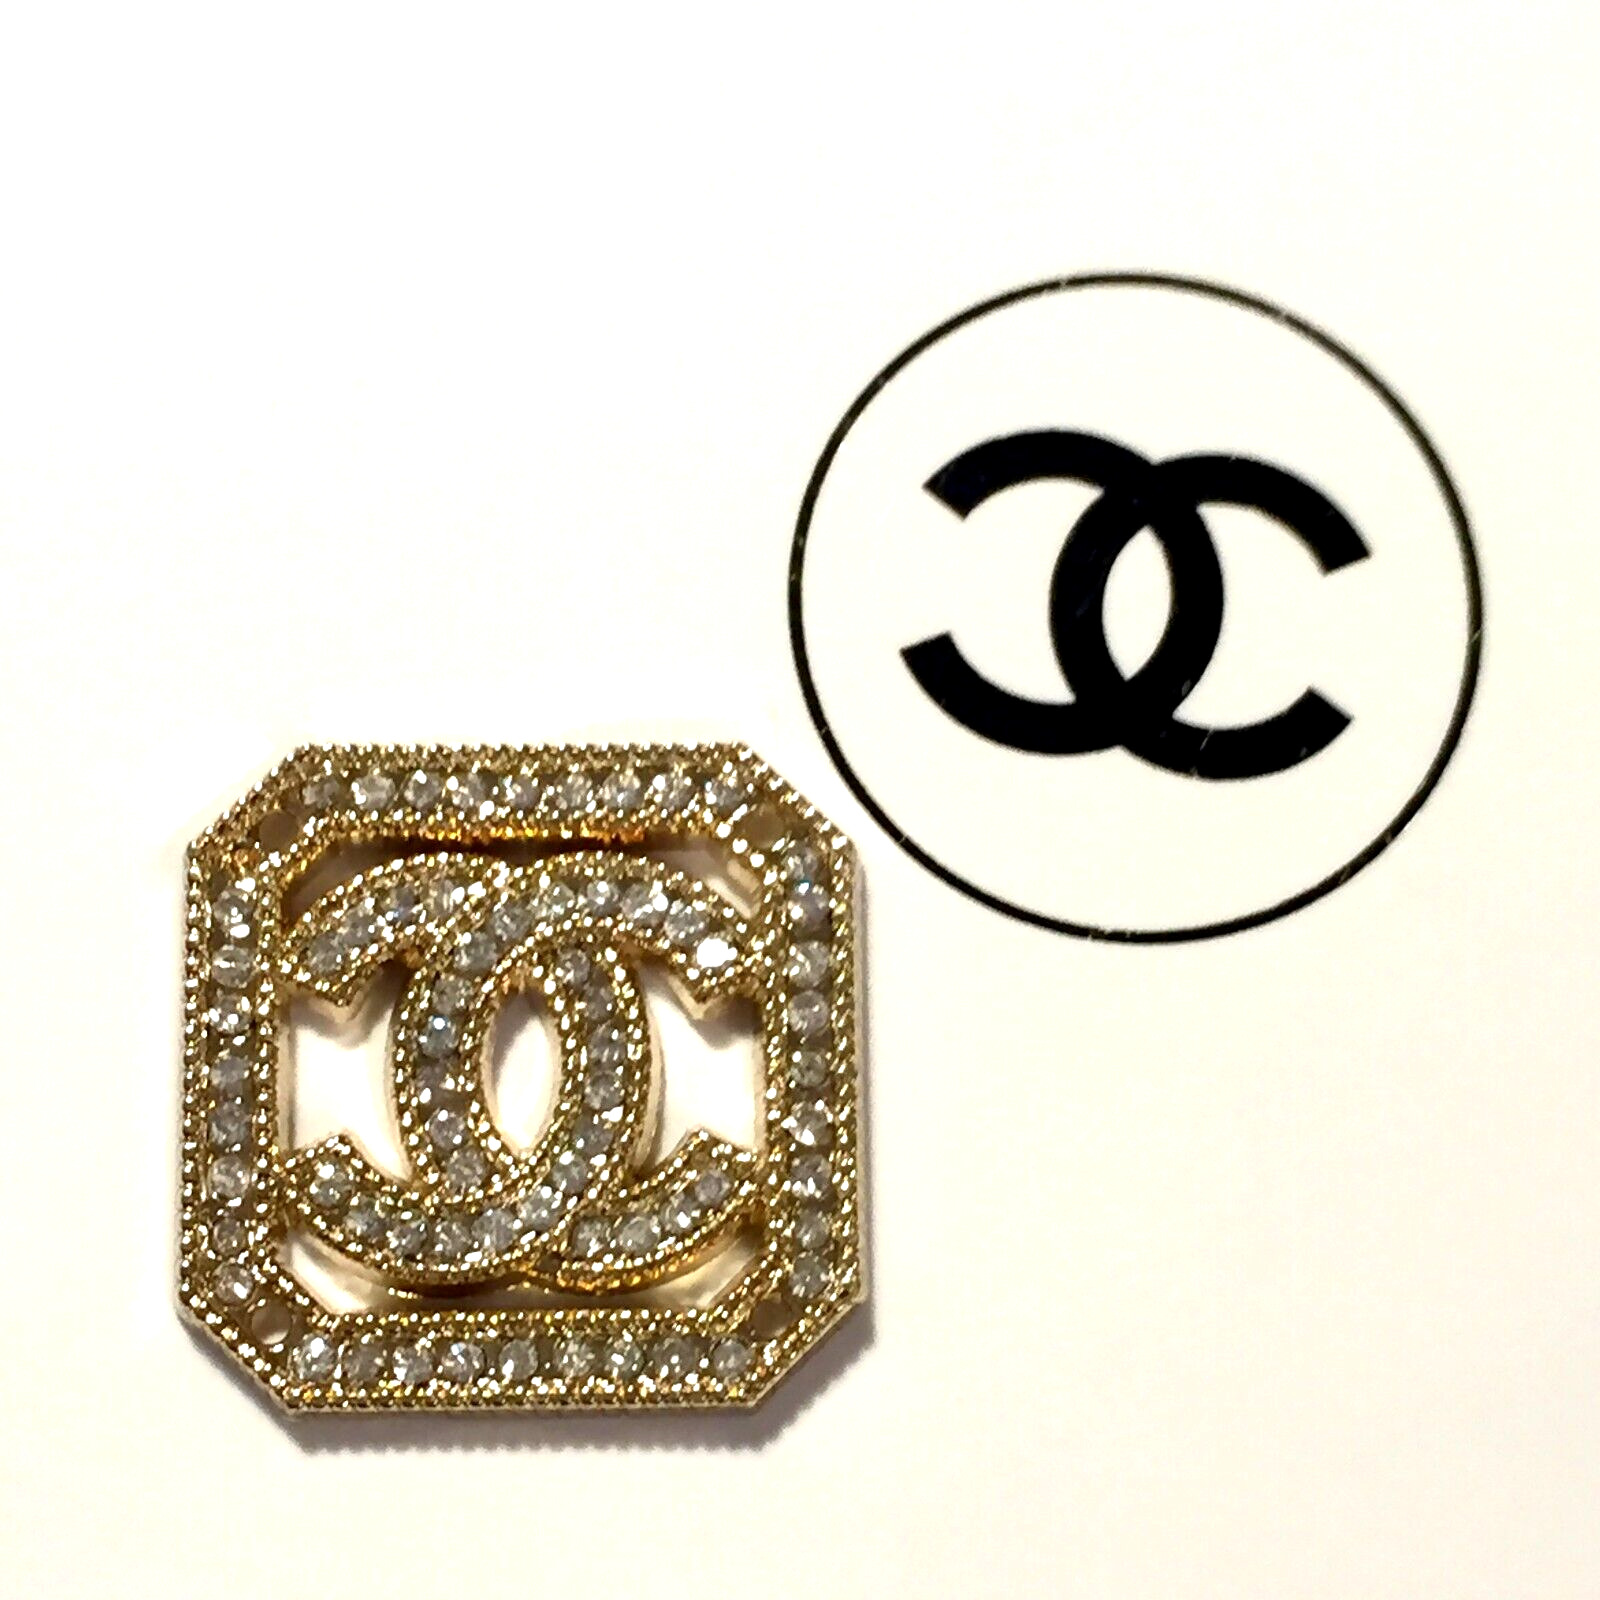 1 Vintage original large 24 mm x 24 mm Chanel CC Logo gold tone button 4 holes